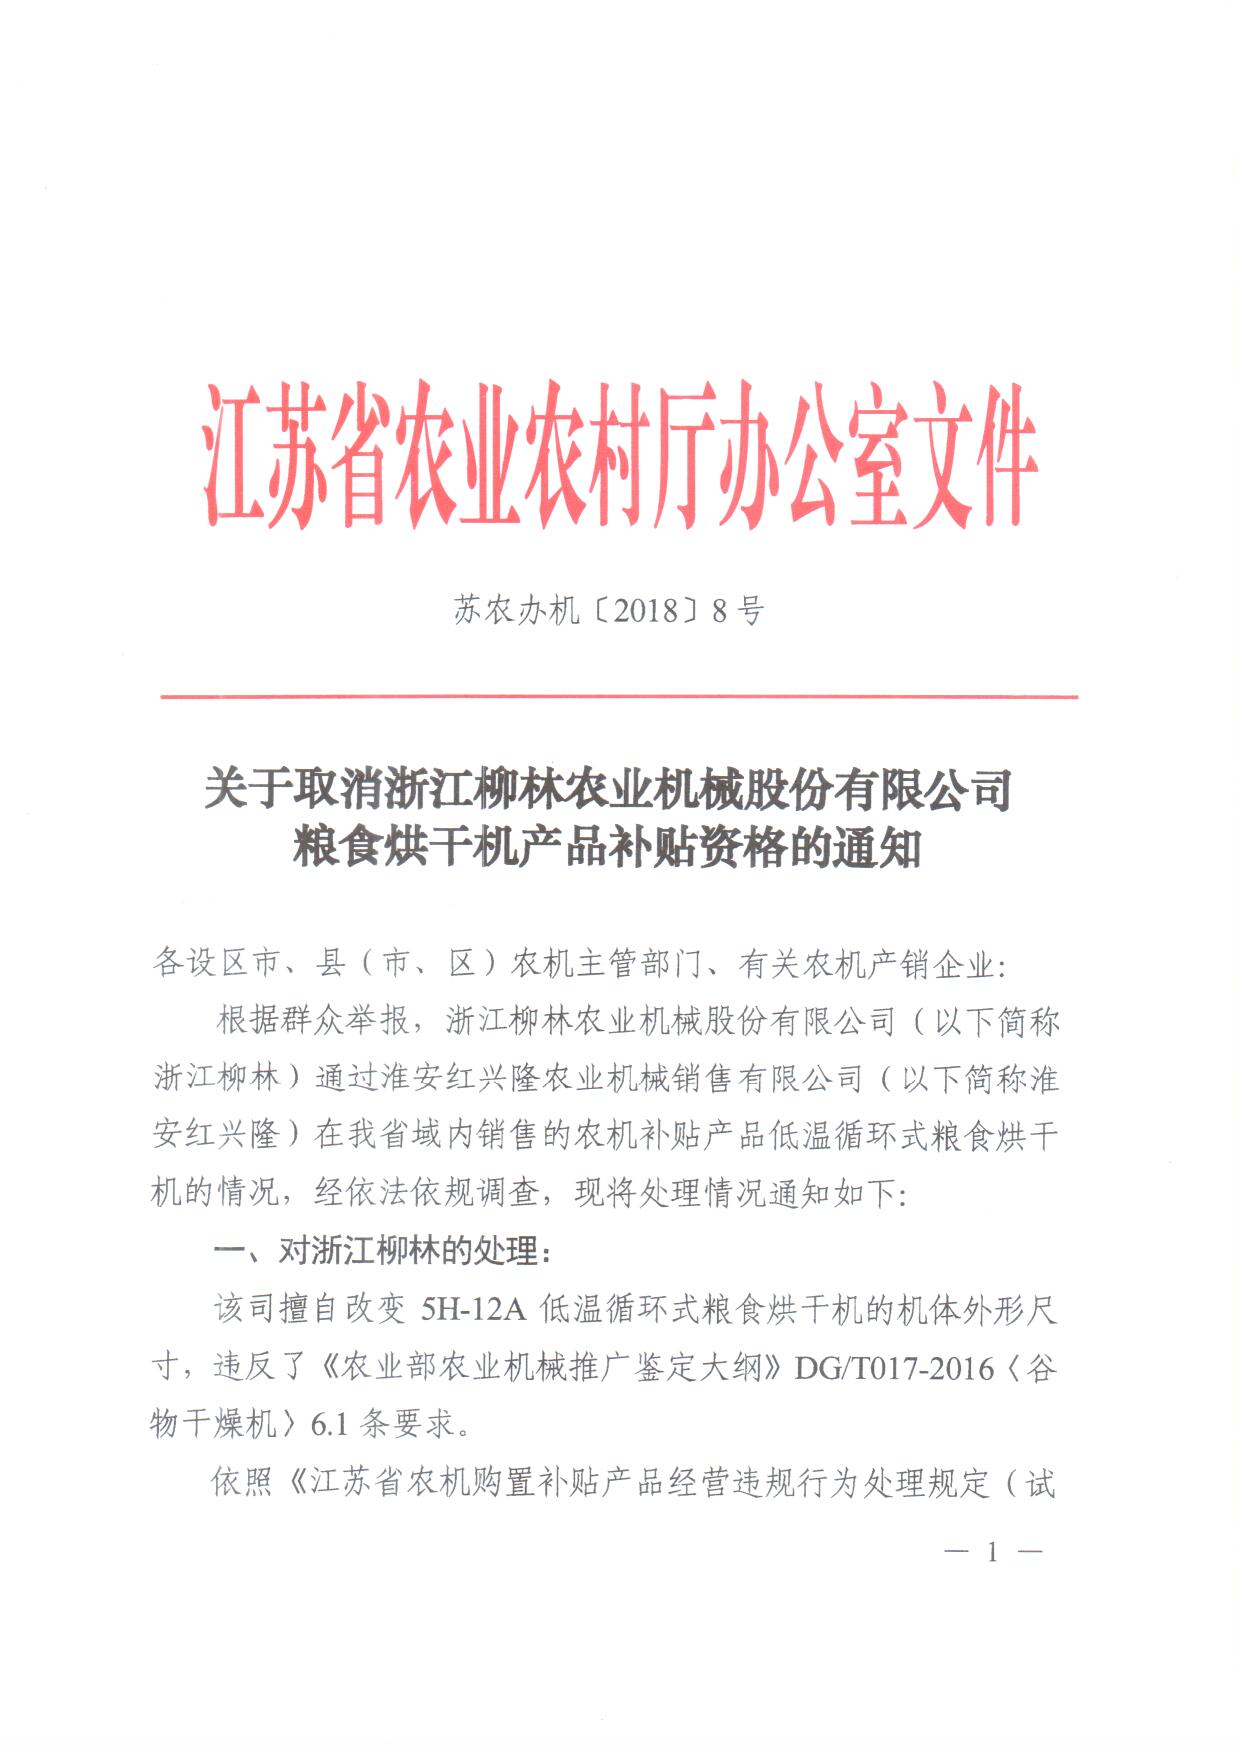 关于取消淅江柳林农业机械股份有限公司粮食烘干机产品补贴资格的通知1.jpg